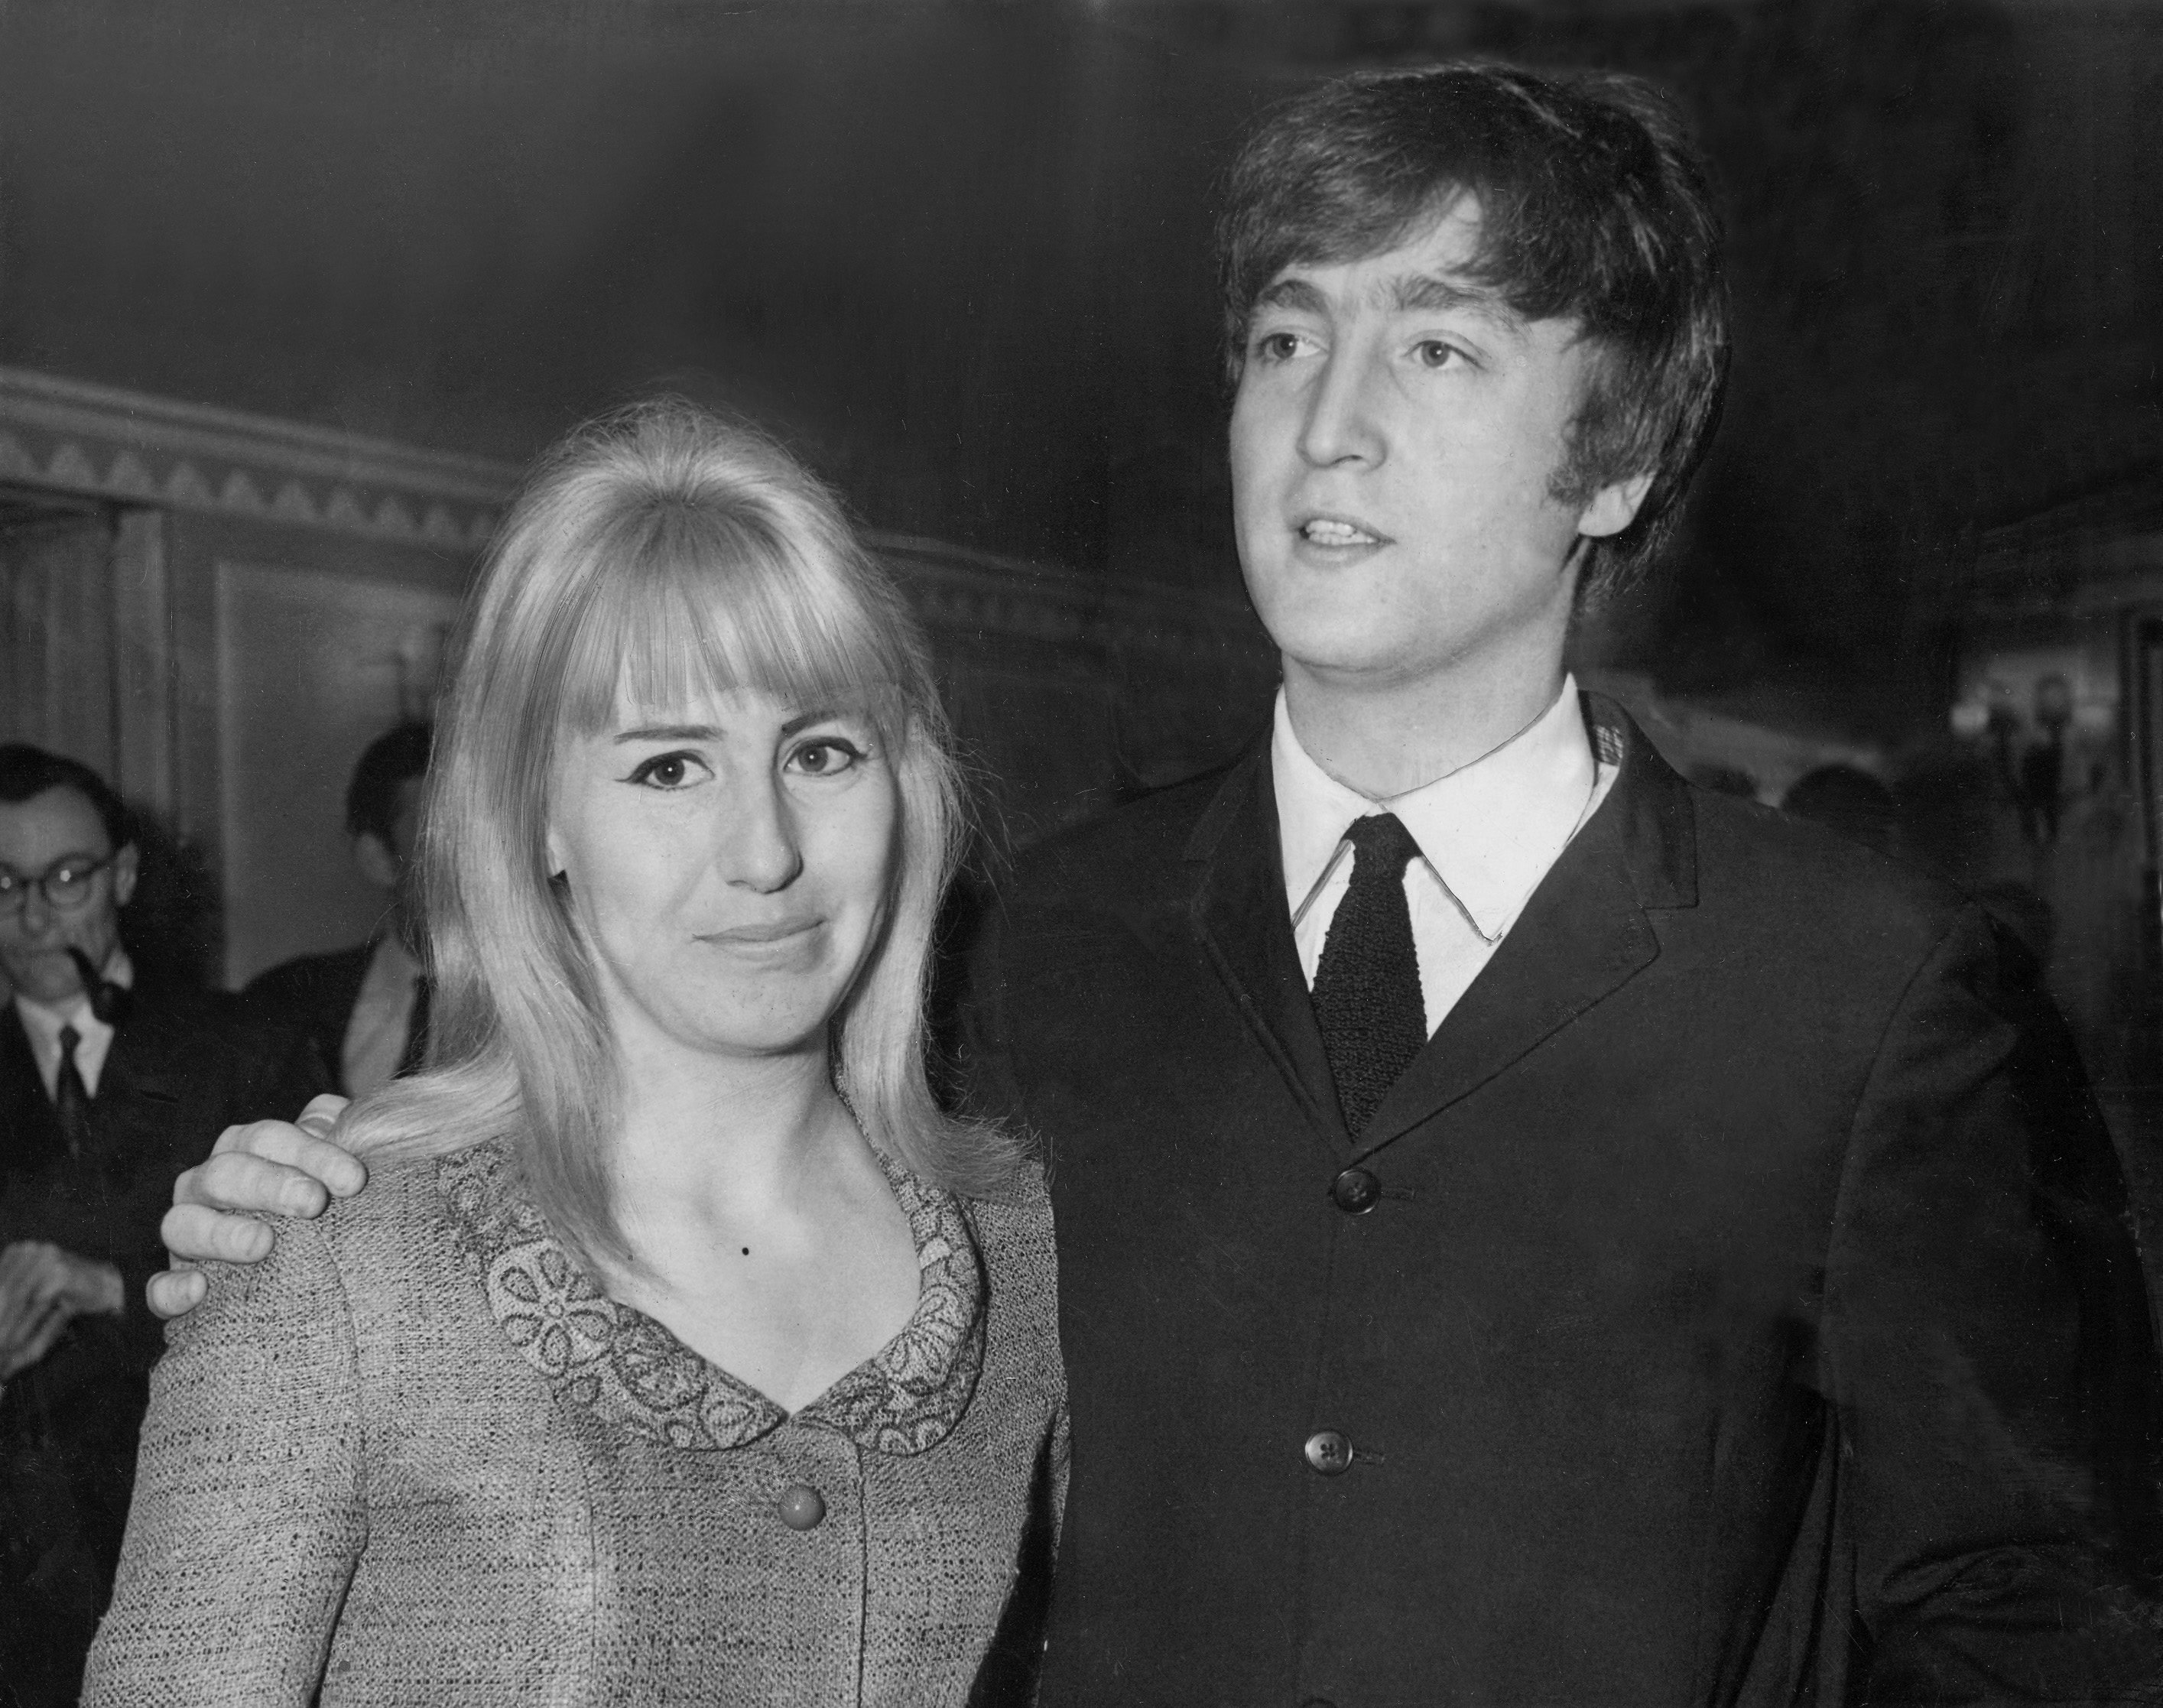 Cynthia and John Lennon in 1964.